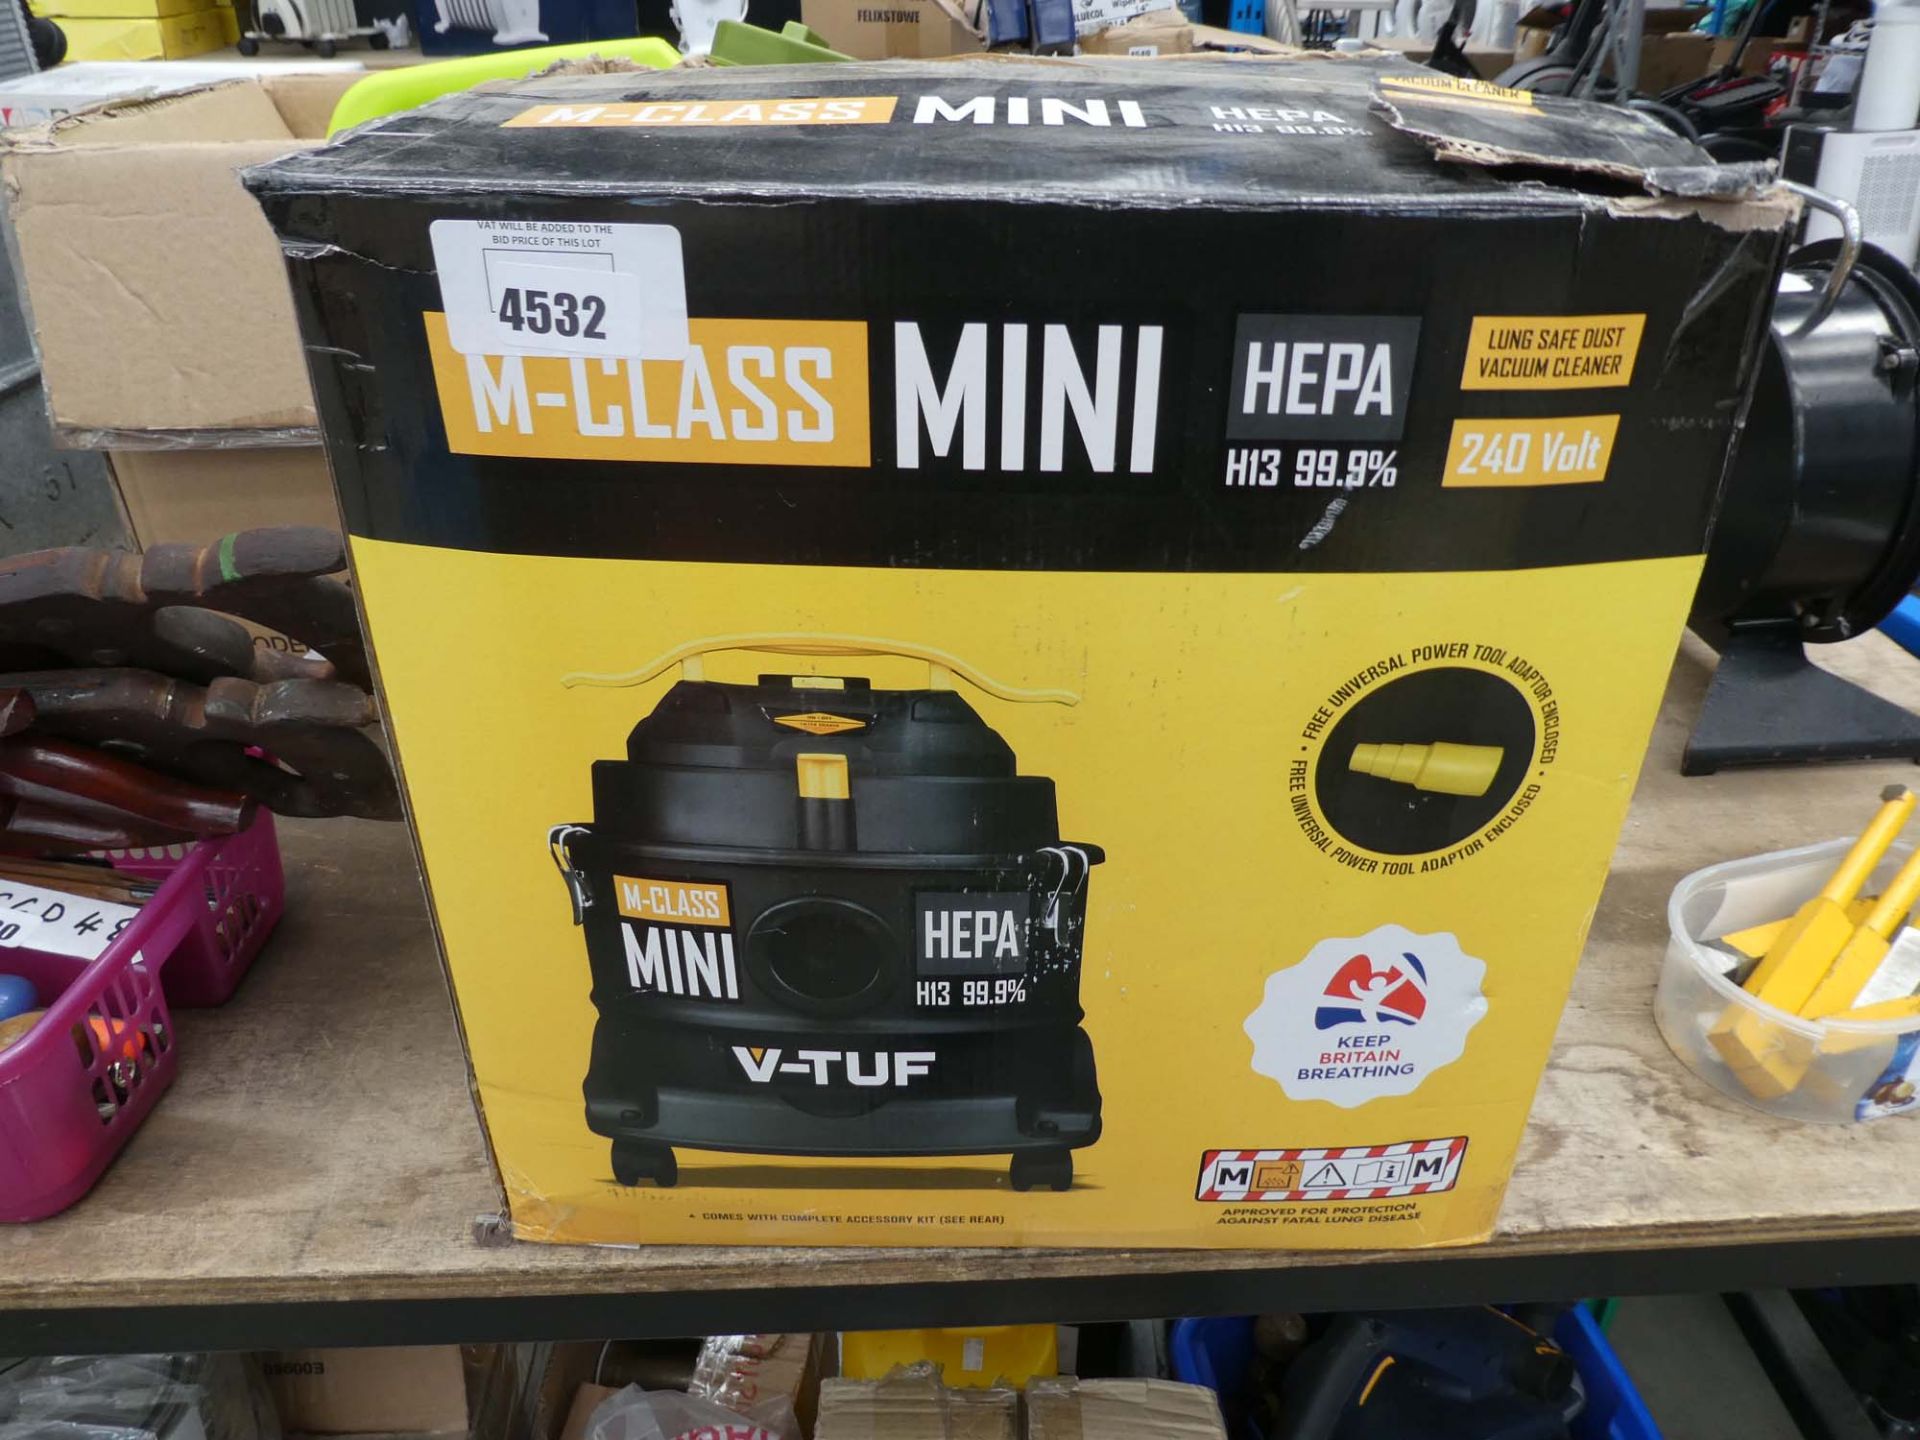 M Class mini vacuum cleaner